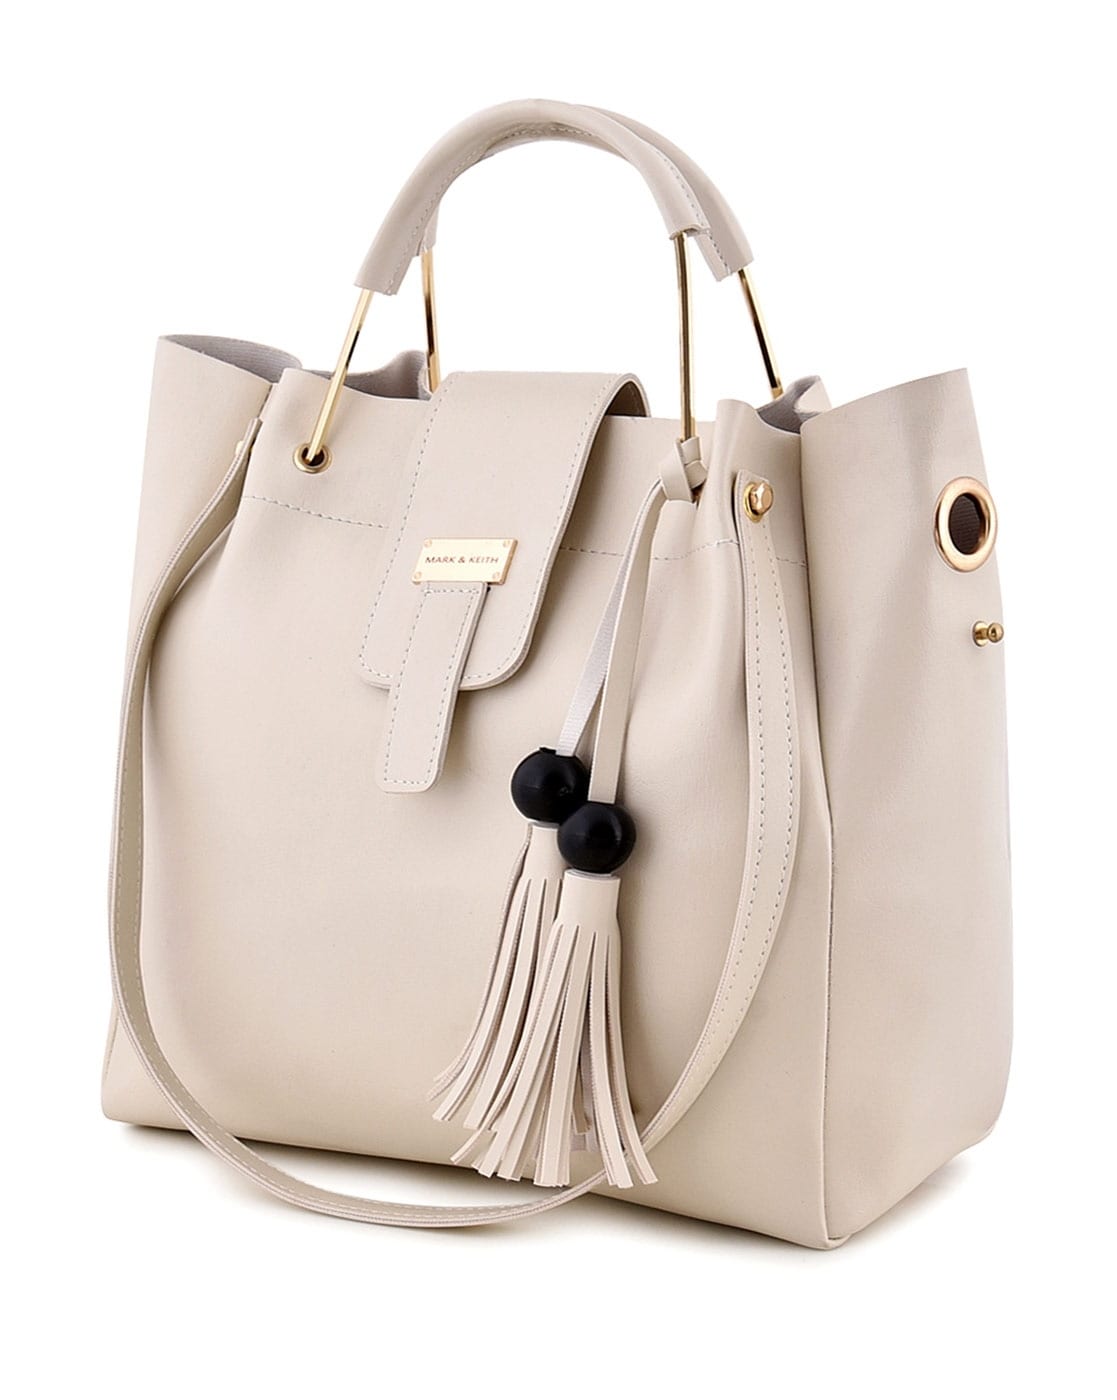 Sienna | Office bags for women, Handbags for school, Fancy bags